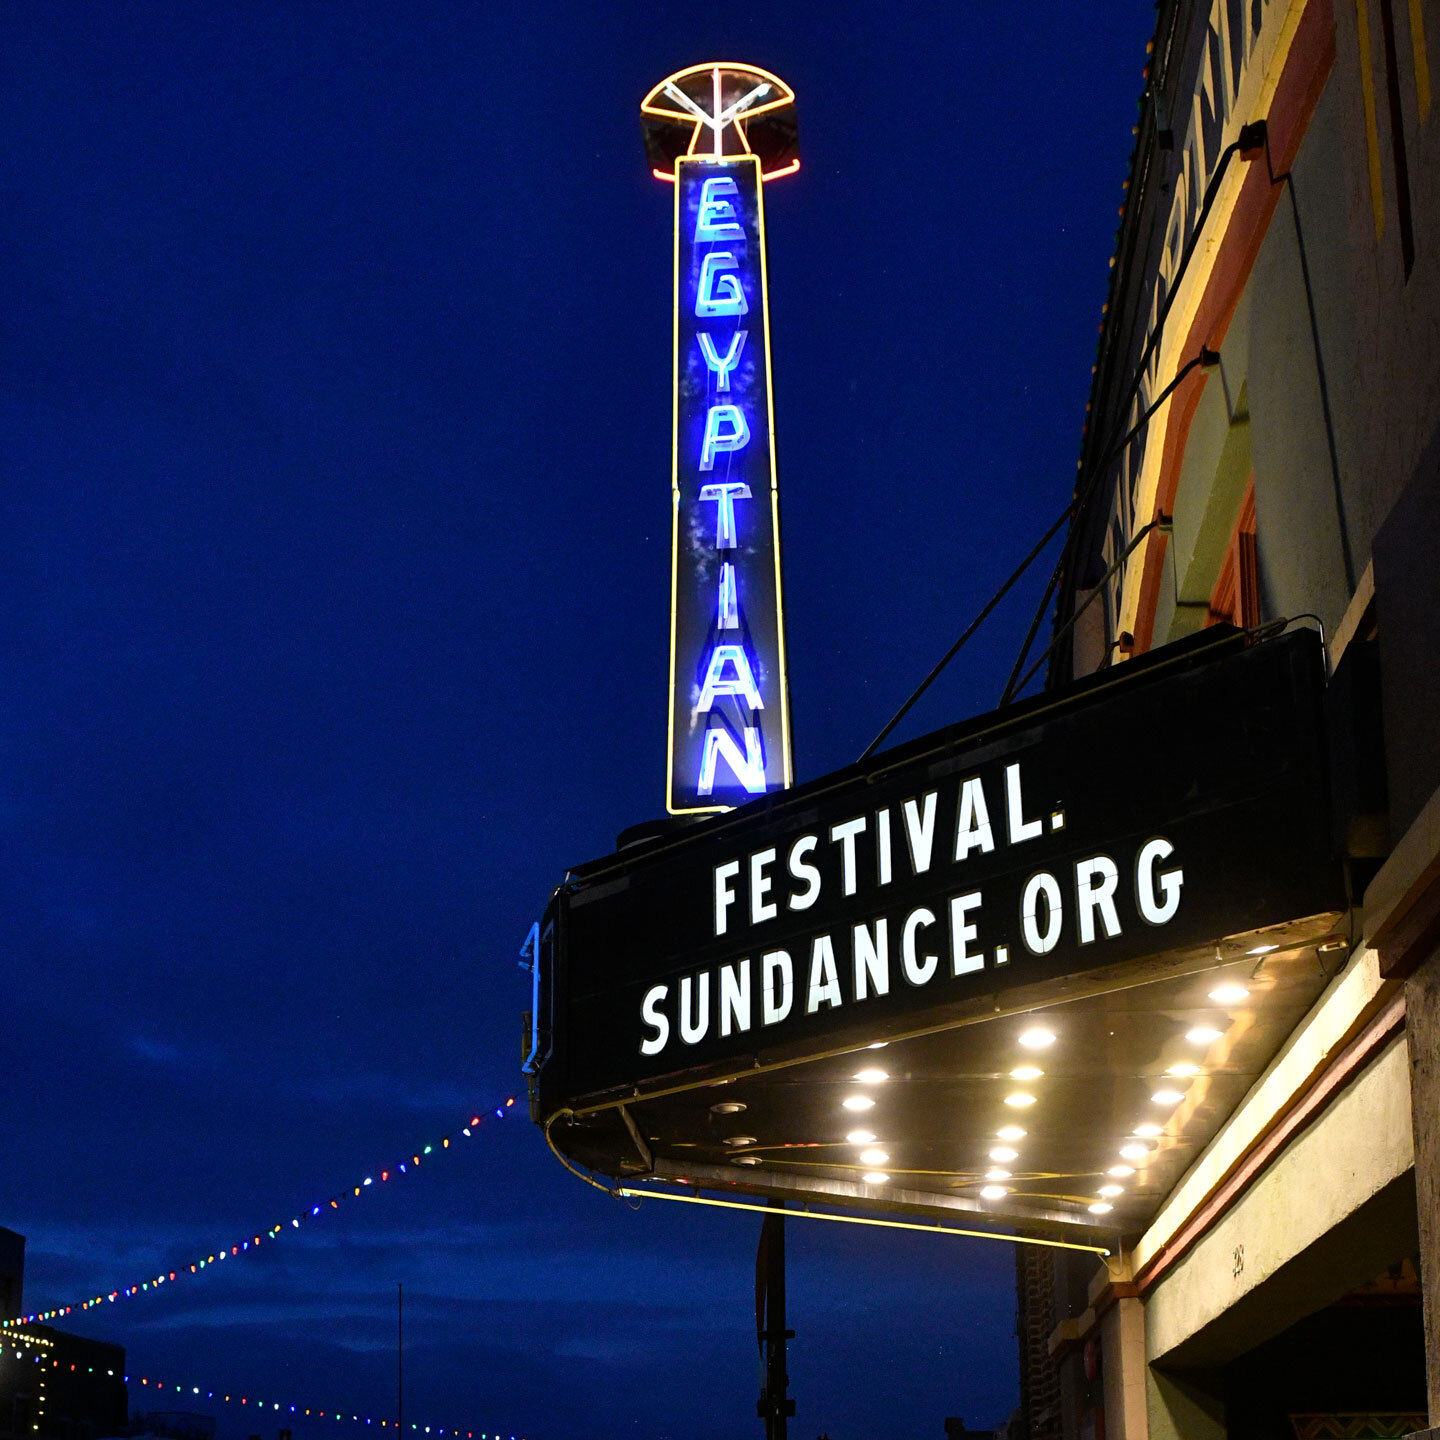 Cinéma Egyptian au festival du film de Sundance avec la mention Festival.Sundance.Org sur le fronton